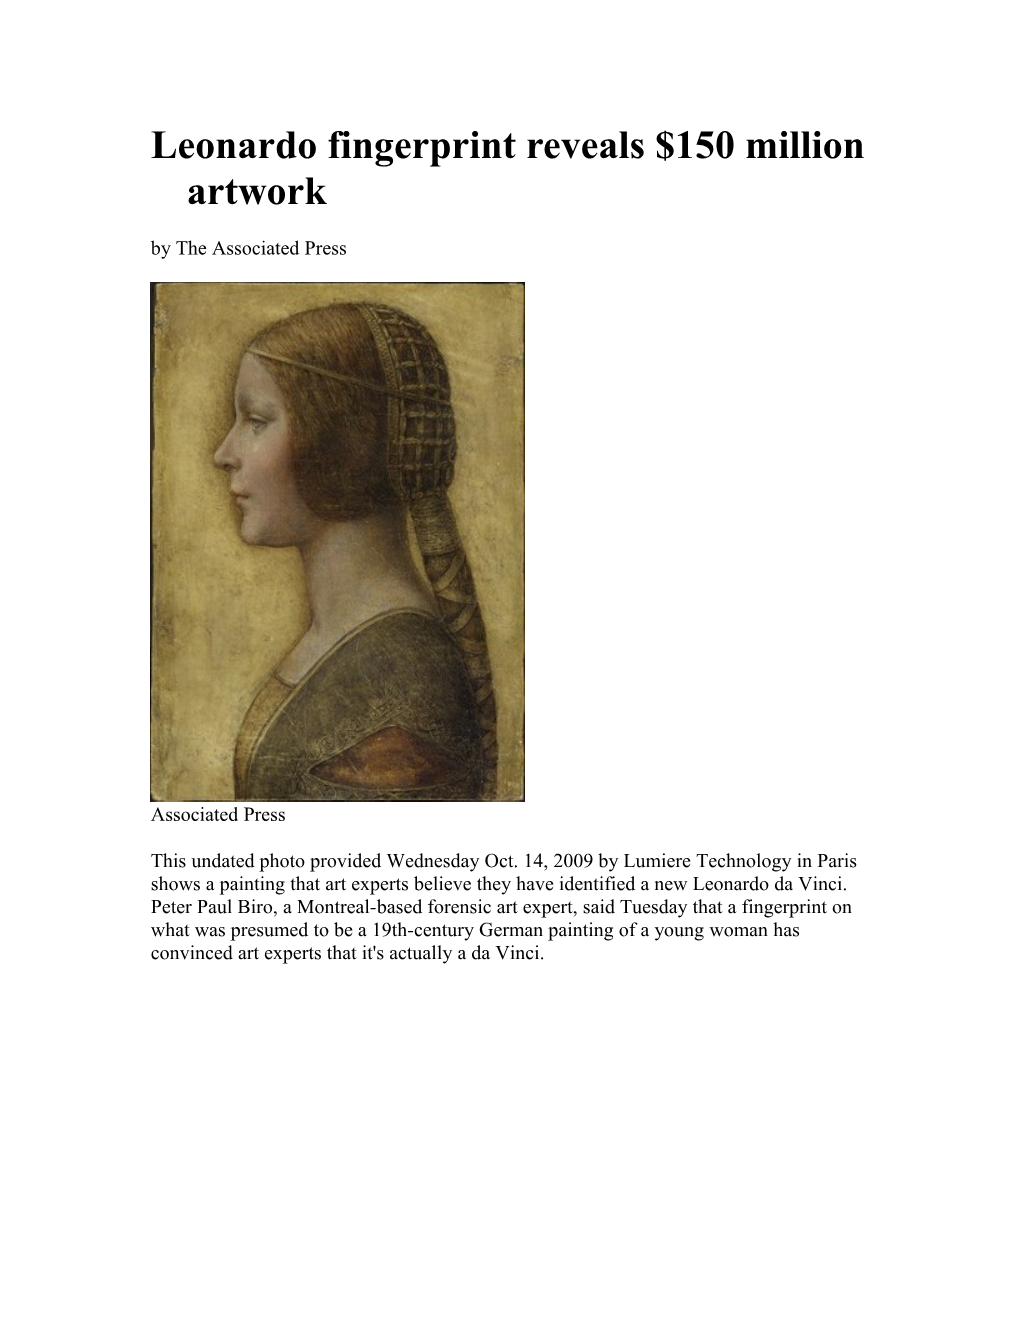 Leonardo Fingerprint Reveals $150 Million Artwork